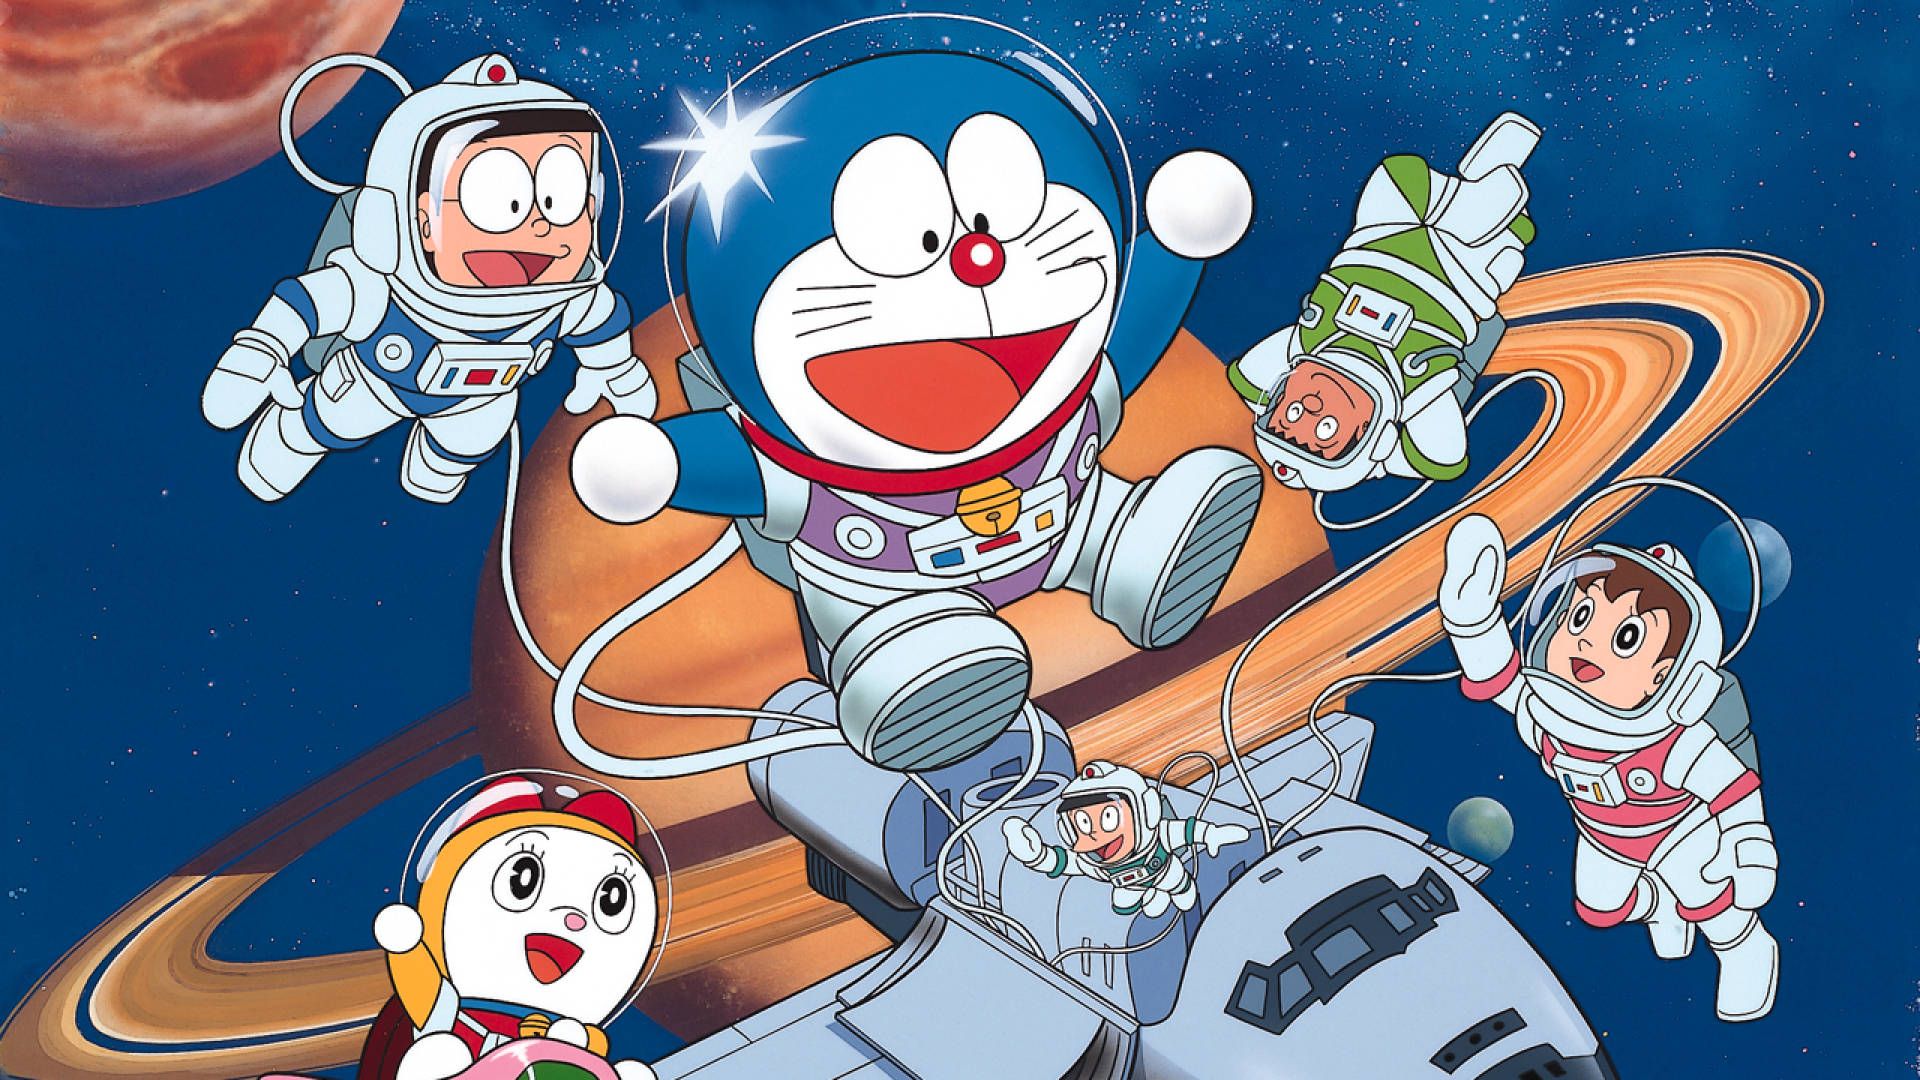 Doraemon Wallpaper for FREE